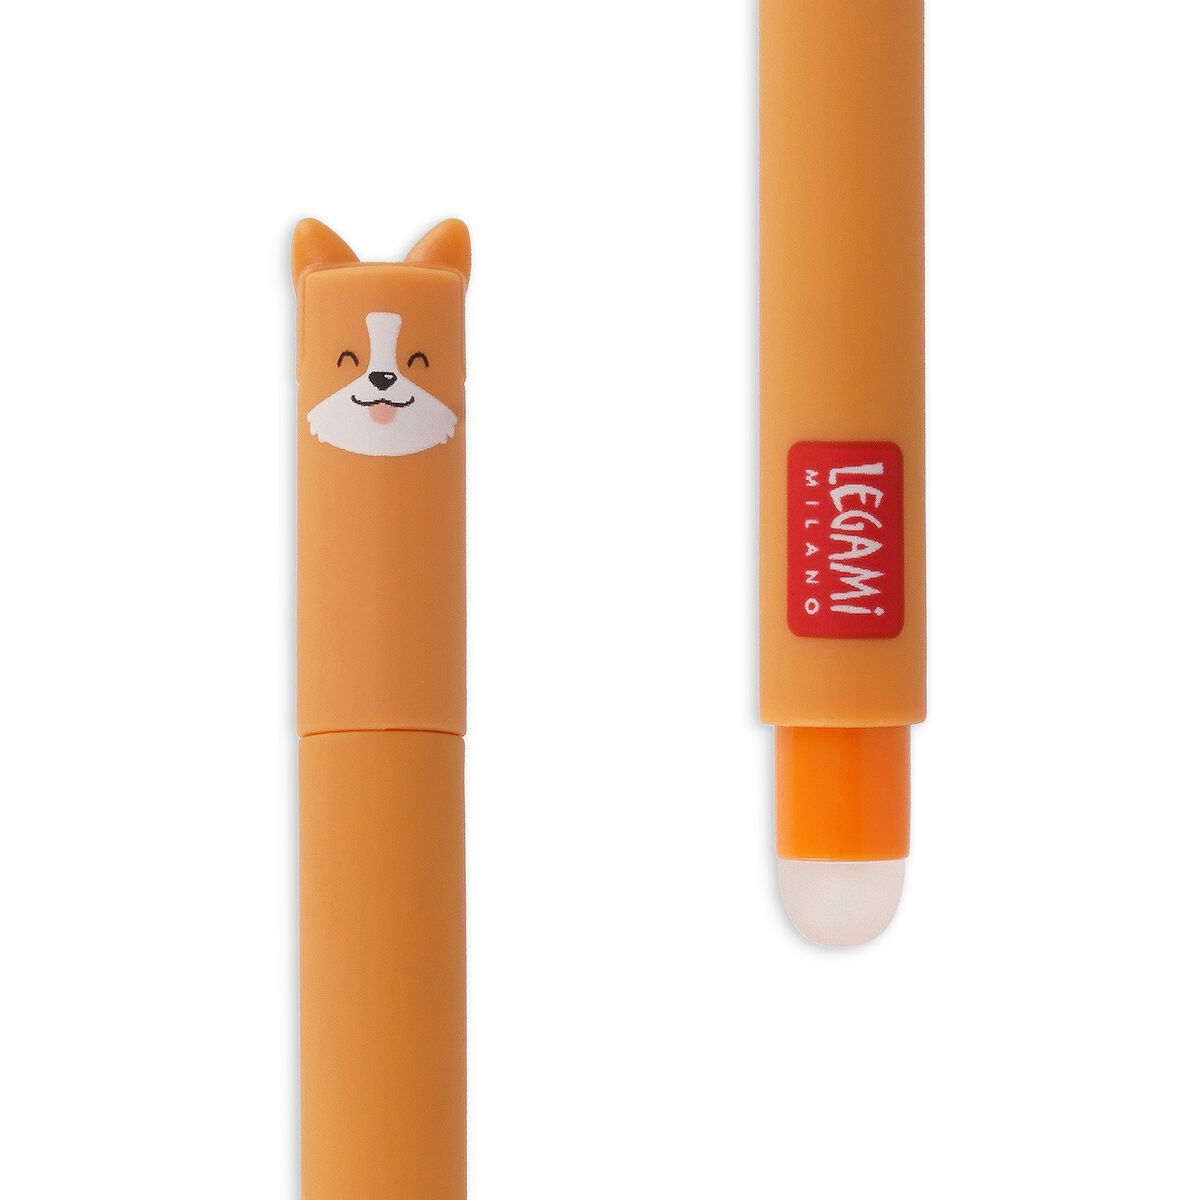 Löschbarer Gelstift - Erasable Pen, , zoo